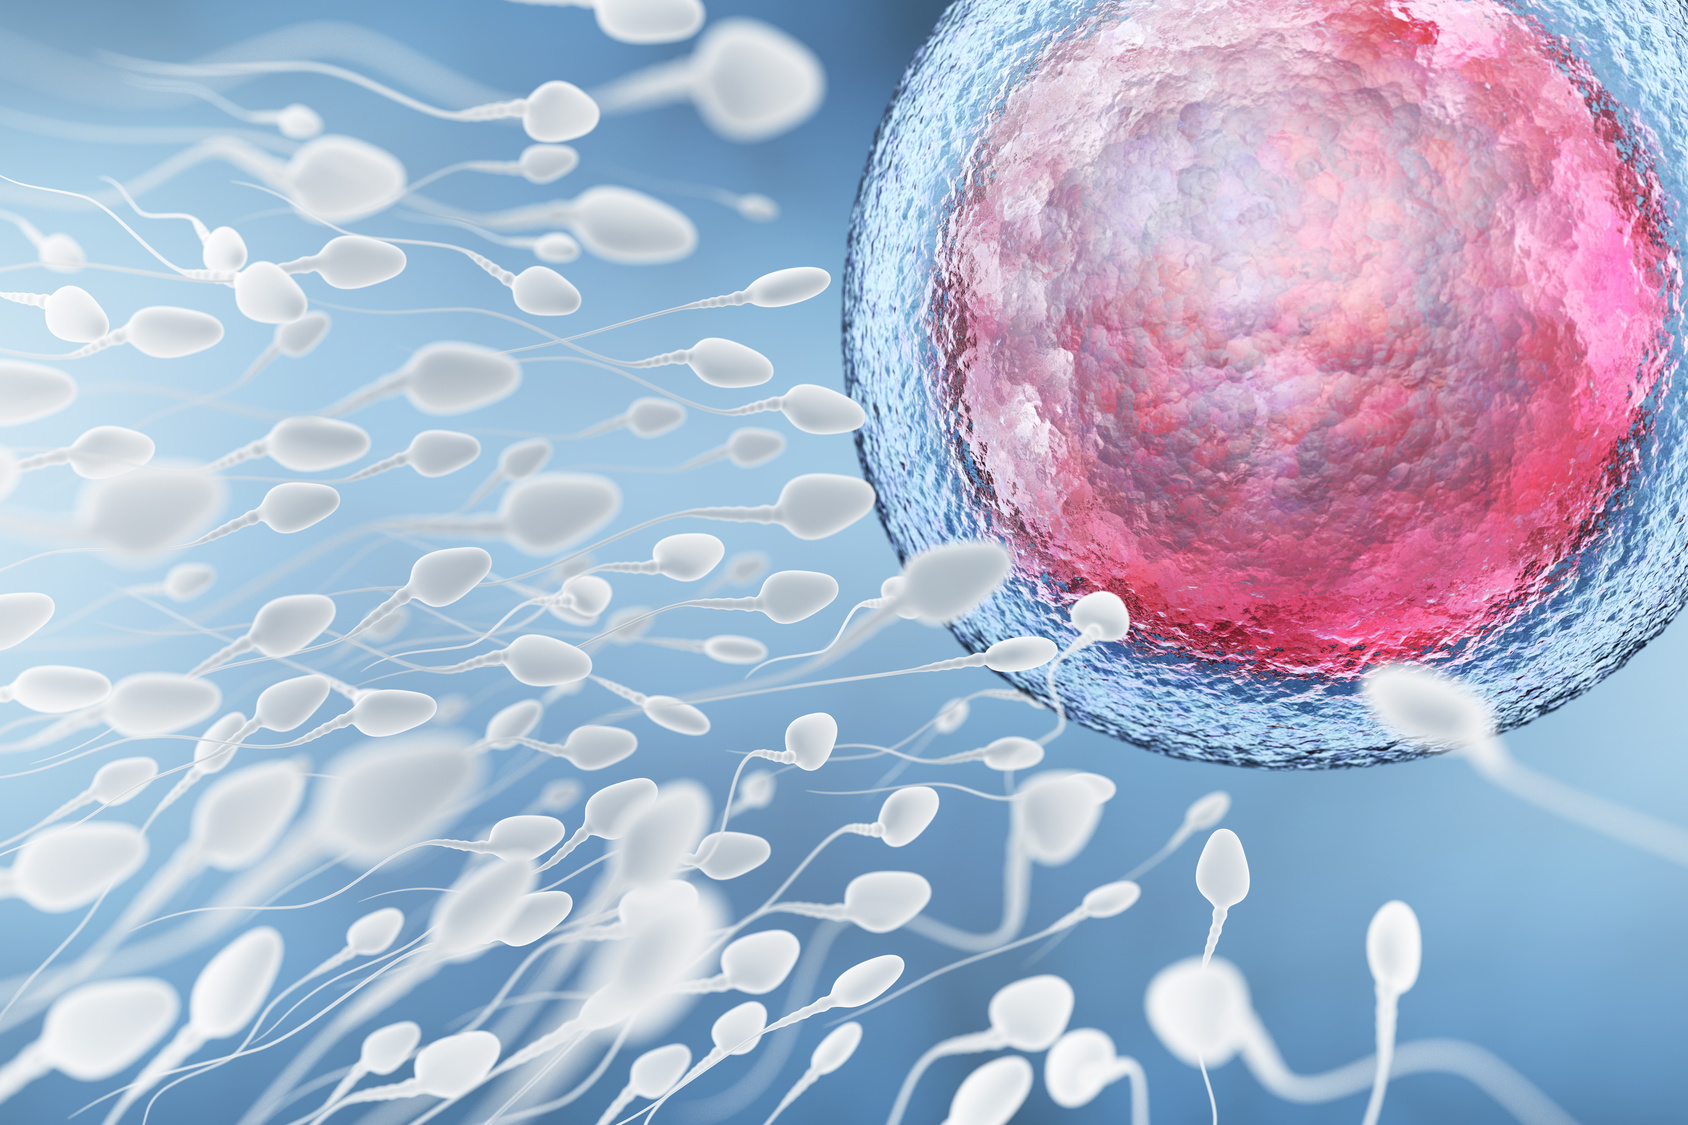 Fécondation : comment l'ovule choisit le spermatozoïde ? - pandorabijoux-soldes.fr